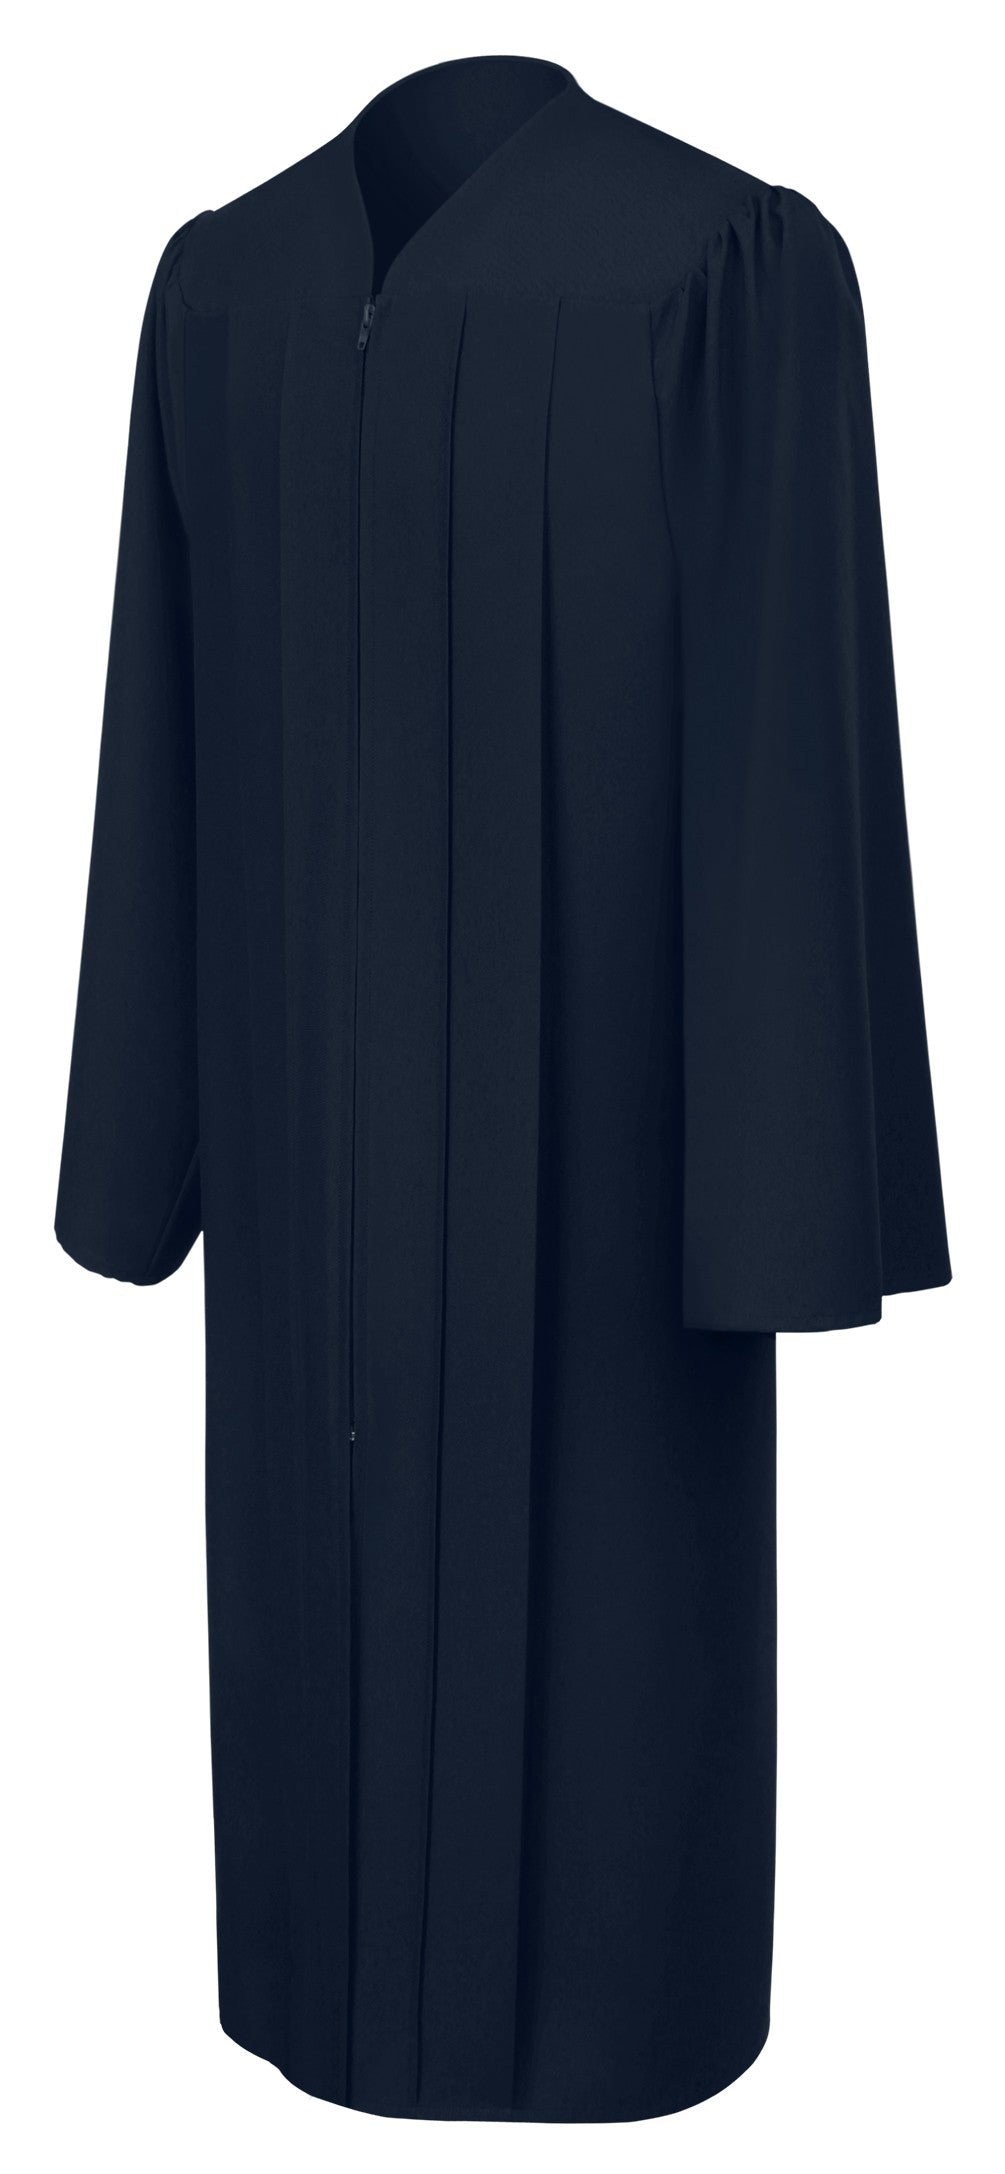 Matte Navy Blue Choir Robe - Church Choir Robes - ChoirBuy